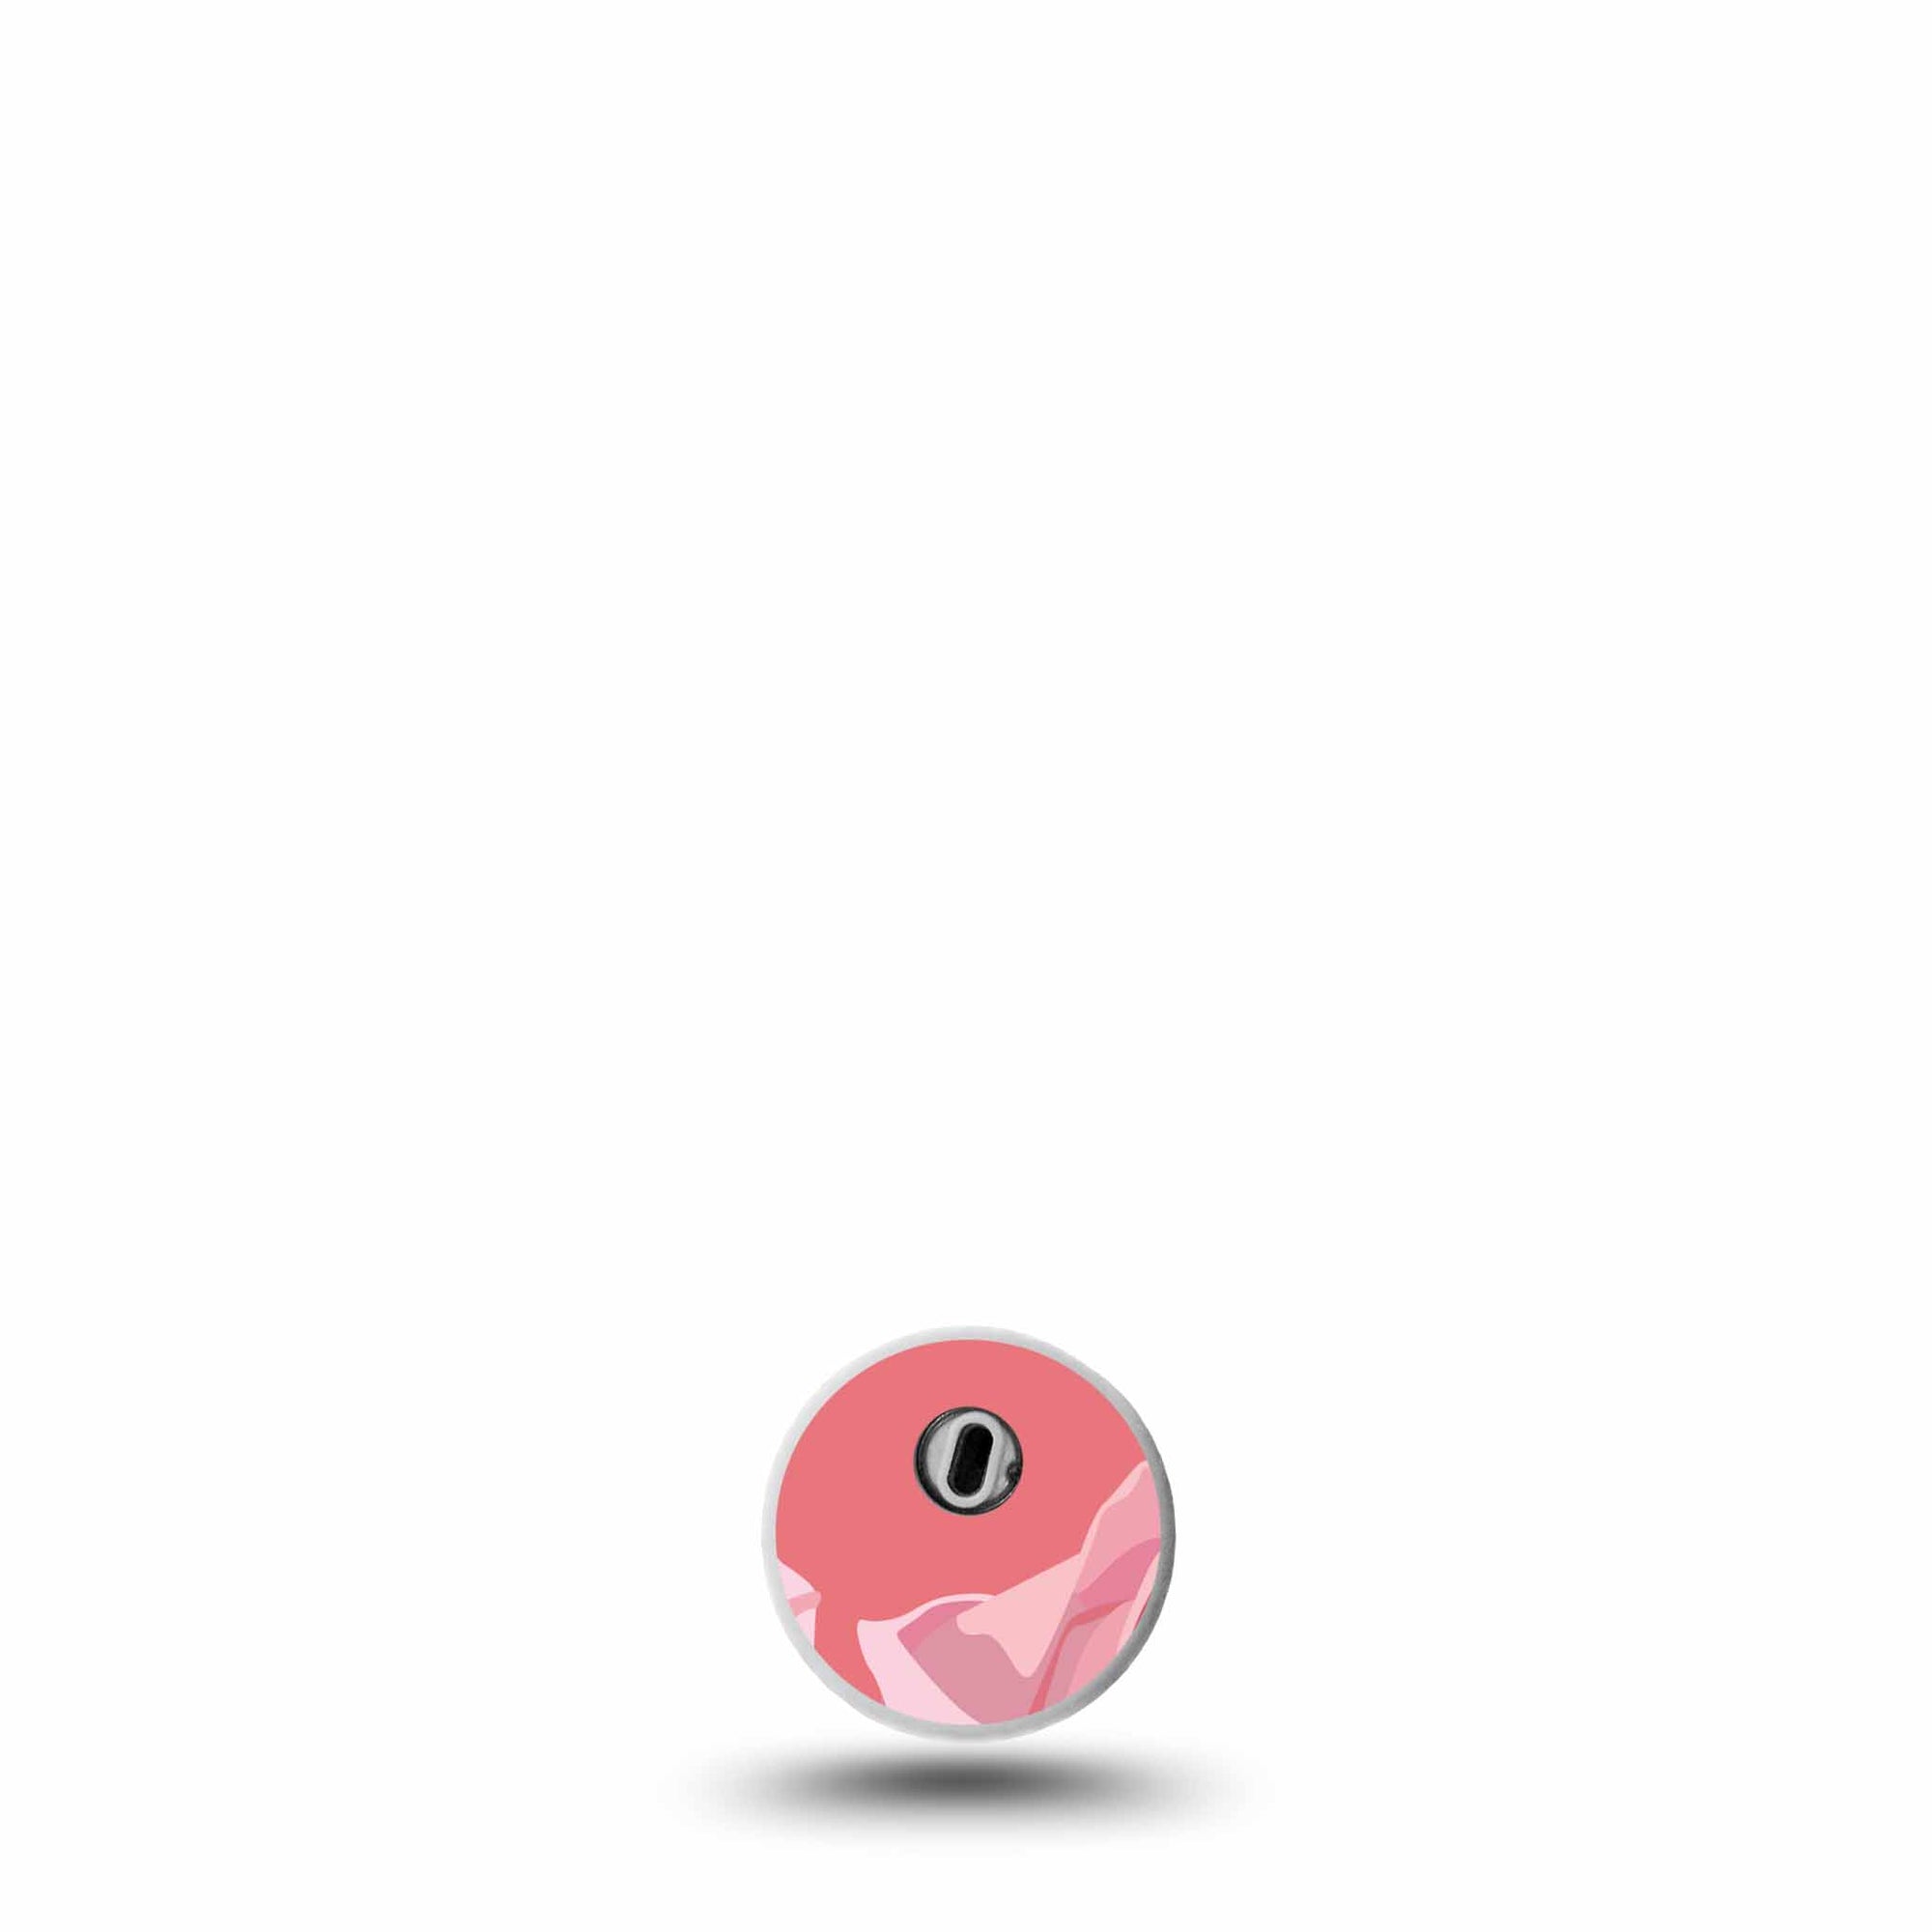 Blush Rose Libre 3 Transmitter Sticker, Pink Floral Device Sticker Design